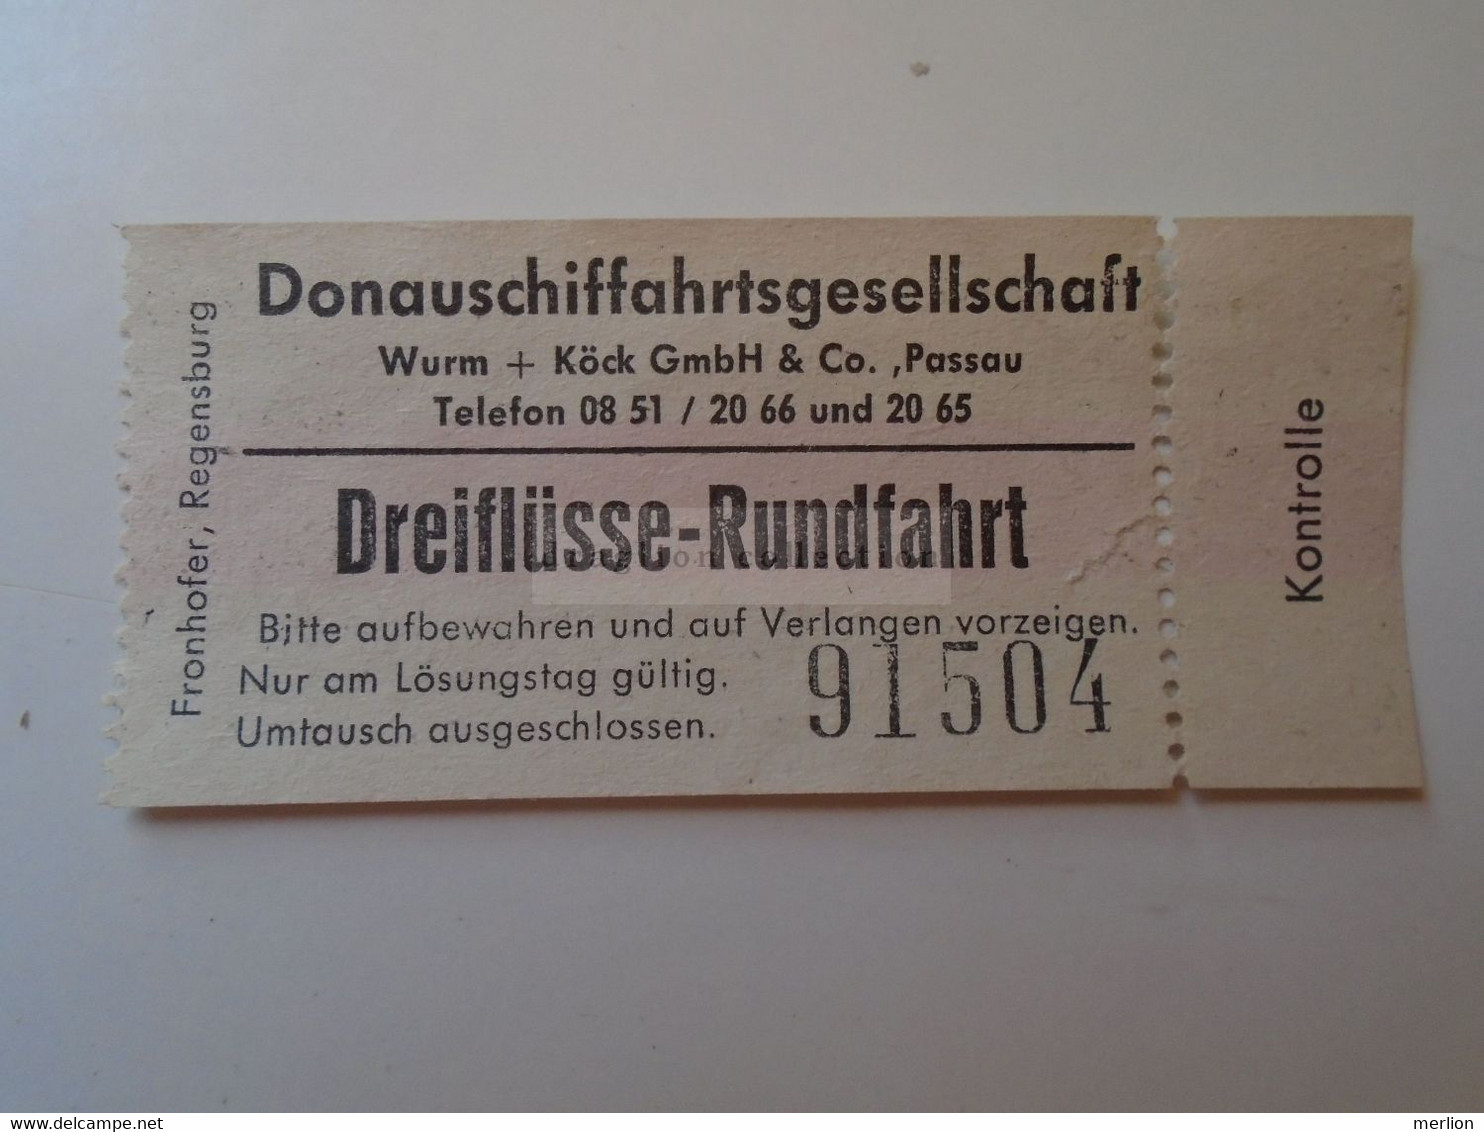 DT007 Donauschiffahrtgesellschaft -  Dreiflüsse-Rundfahrt - Passau  Ticket - Ca 1960-80 - Europe